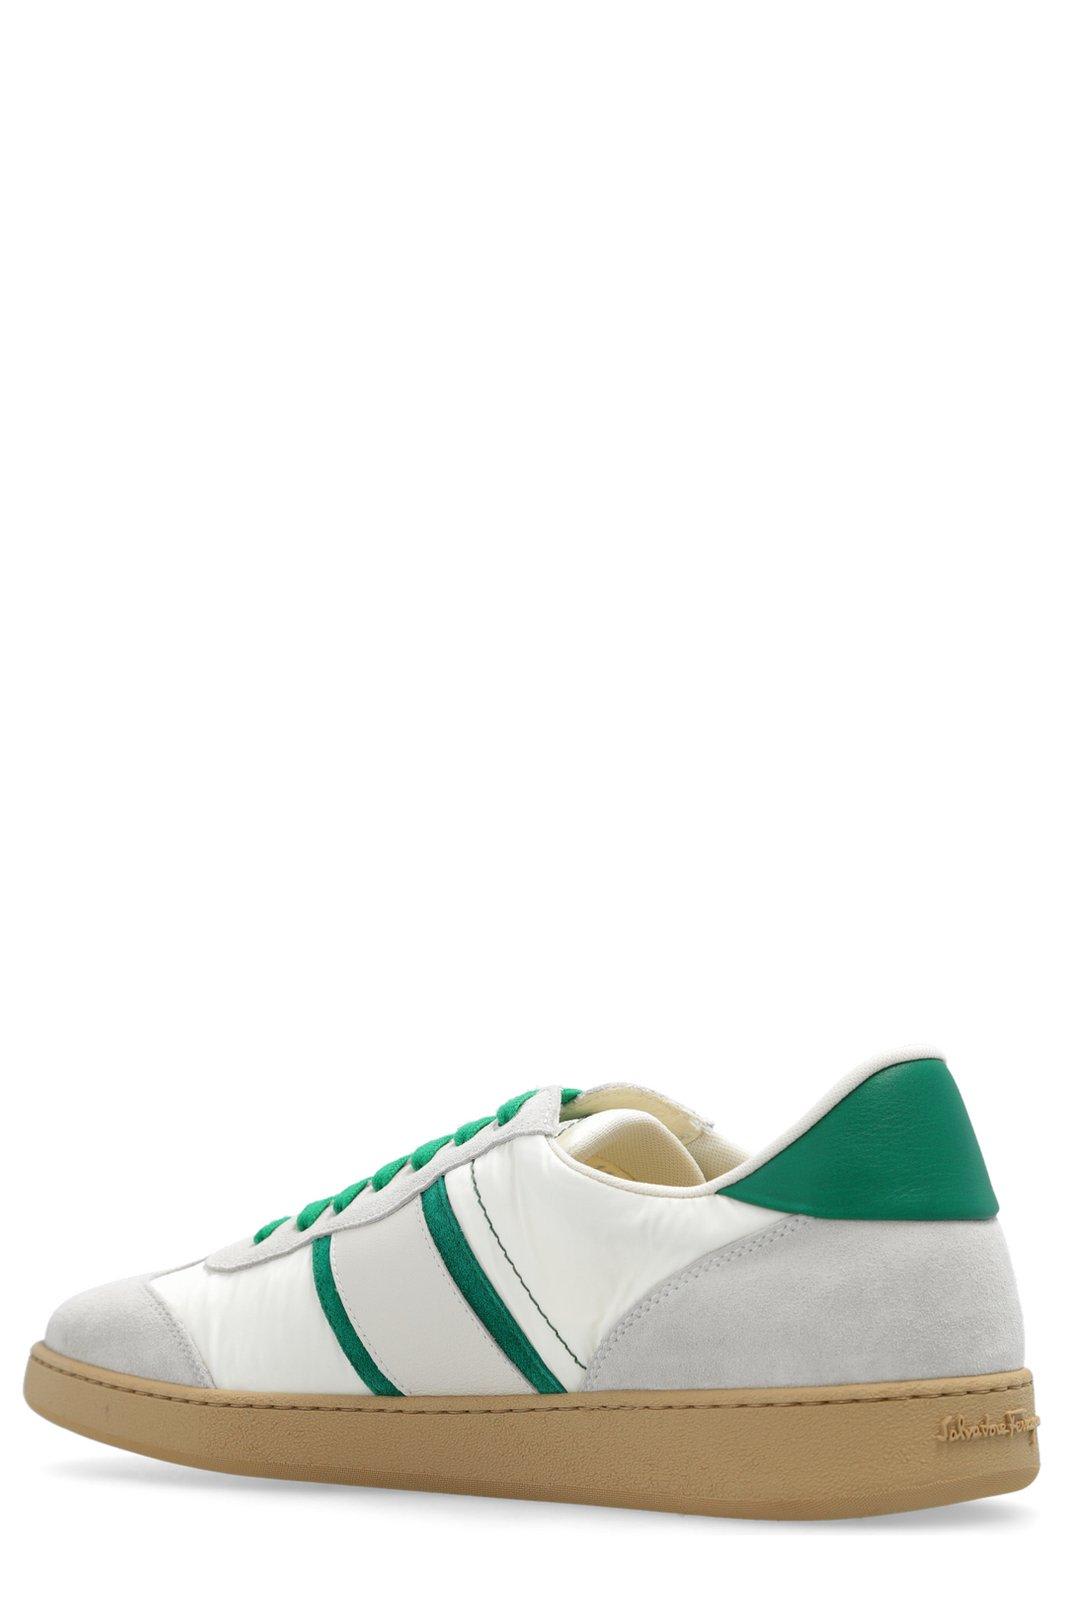 Shop Ferragamo Low-top Sneakers In White